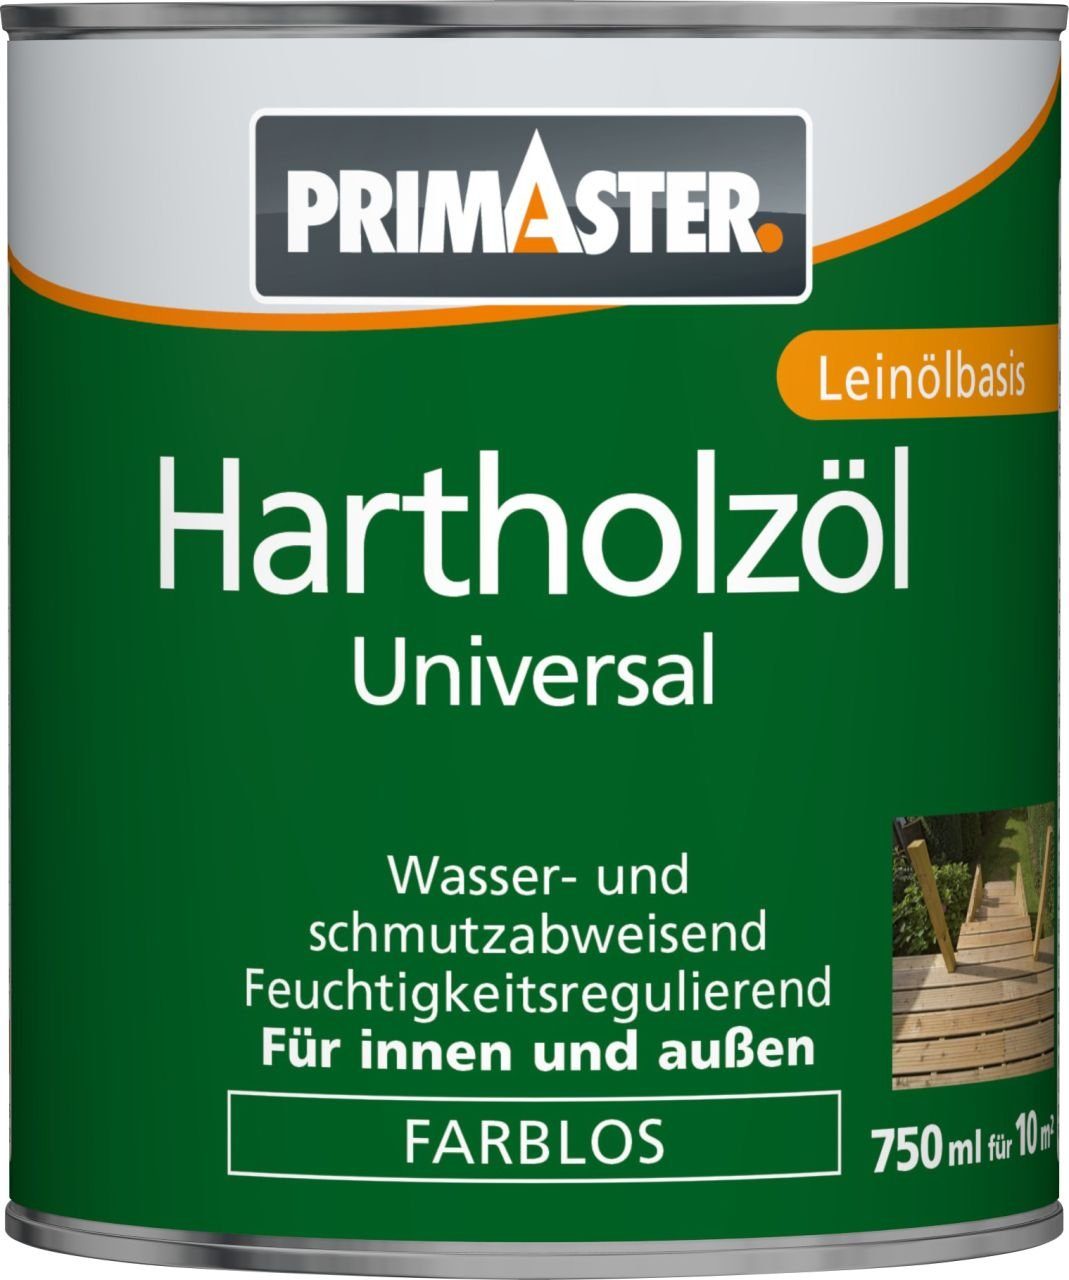 Primaster Hartholzöl Primaster Hartholzöl Universal 750 ml farblos